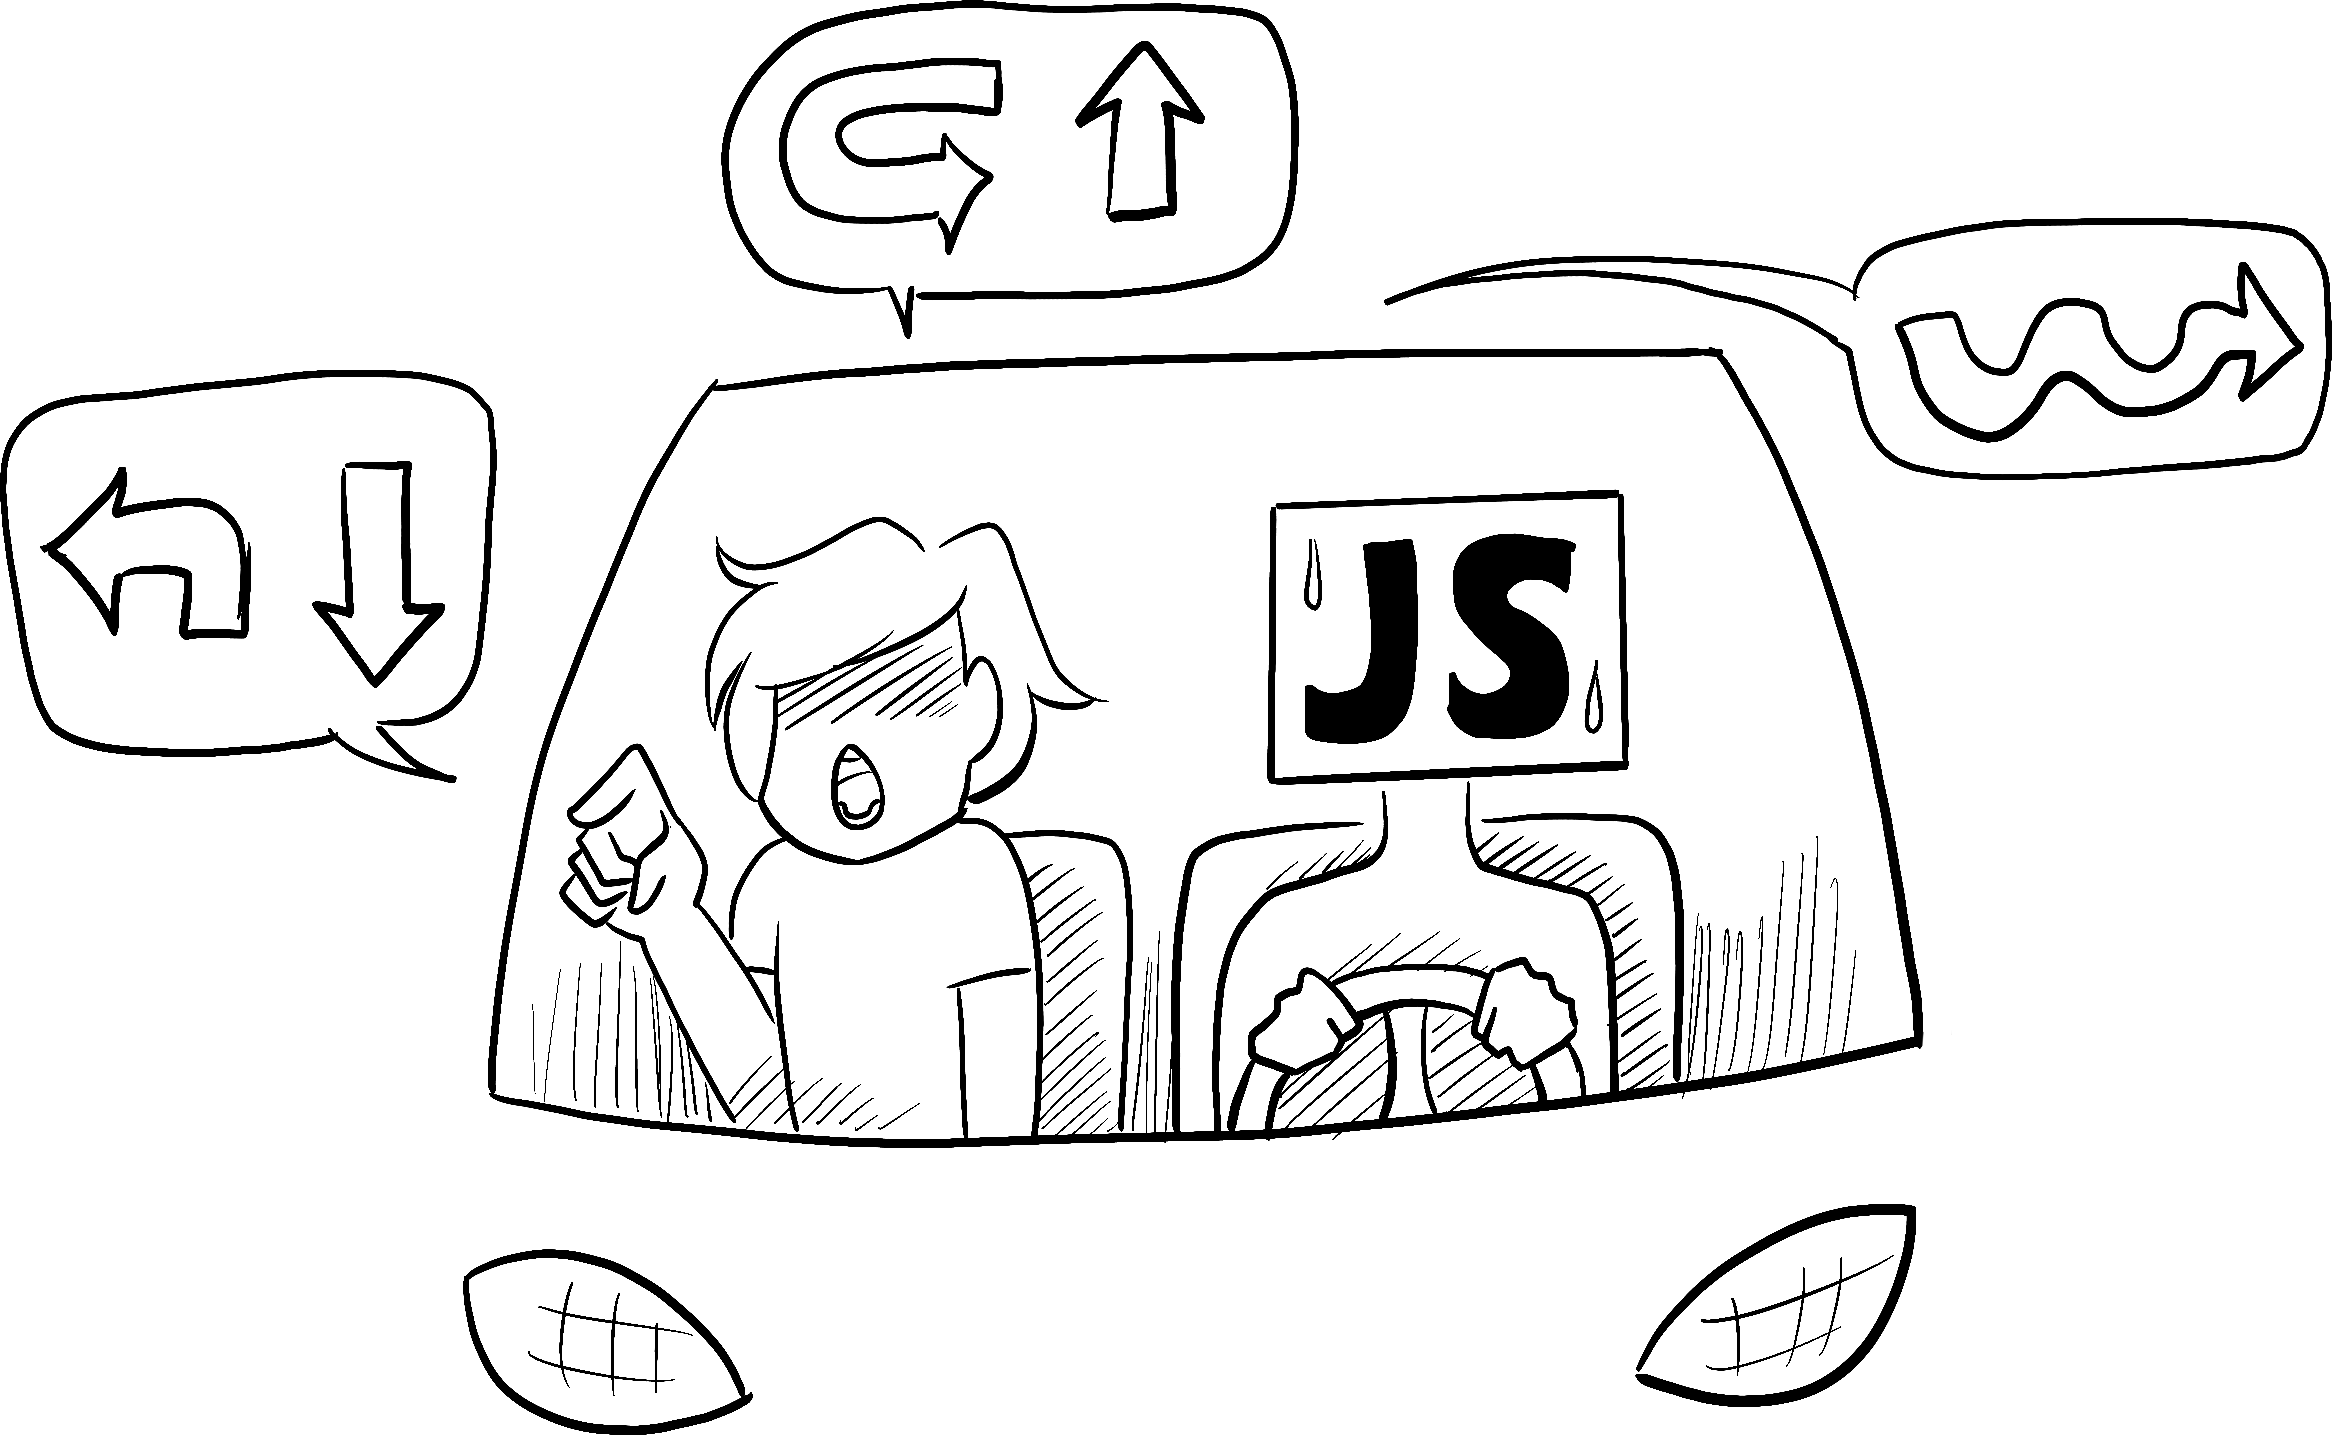 Dans une voiture conduite par une personne l’air anxieuse représentant JavaScript, un passager lui ordonne d'exécuter une séquence de navigations compliquées, étape par étape.